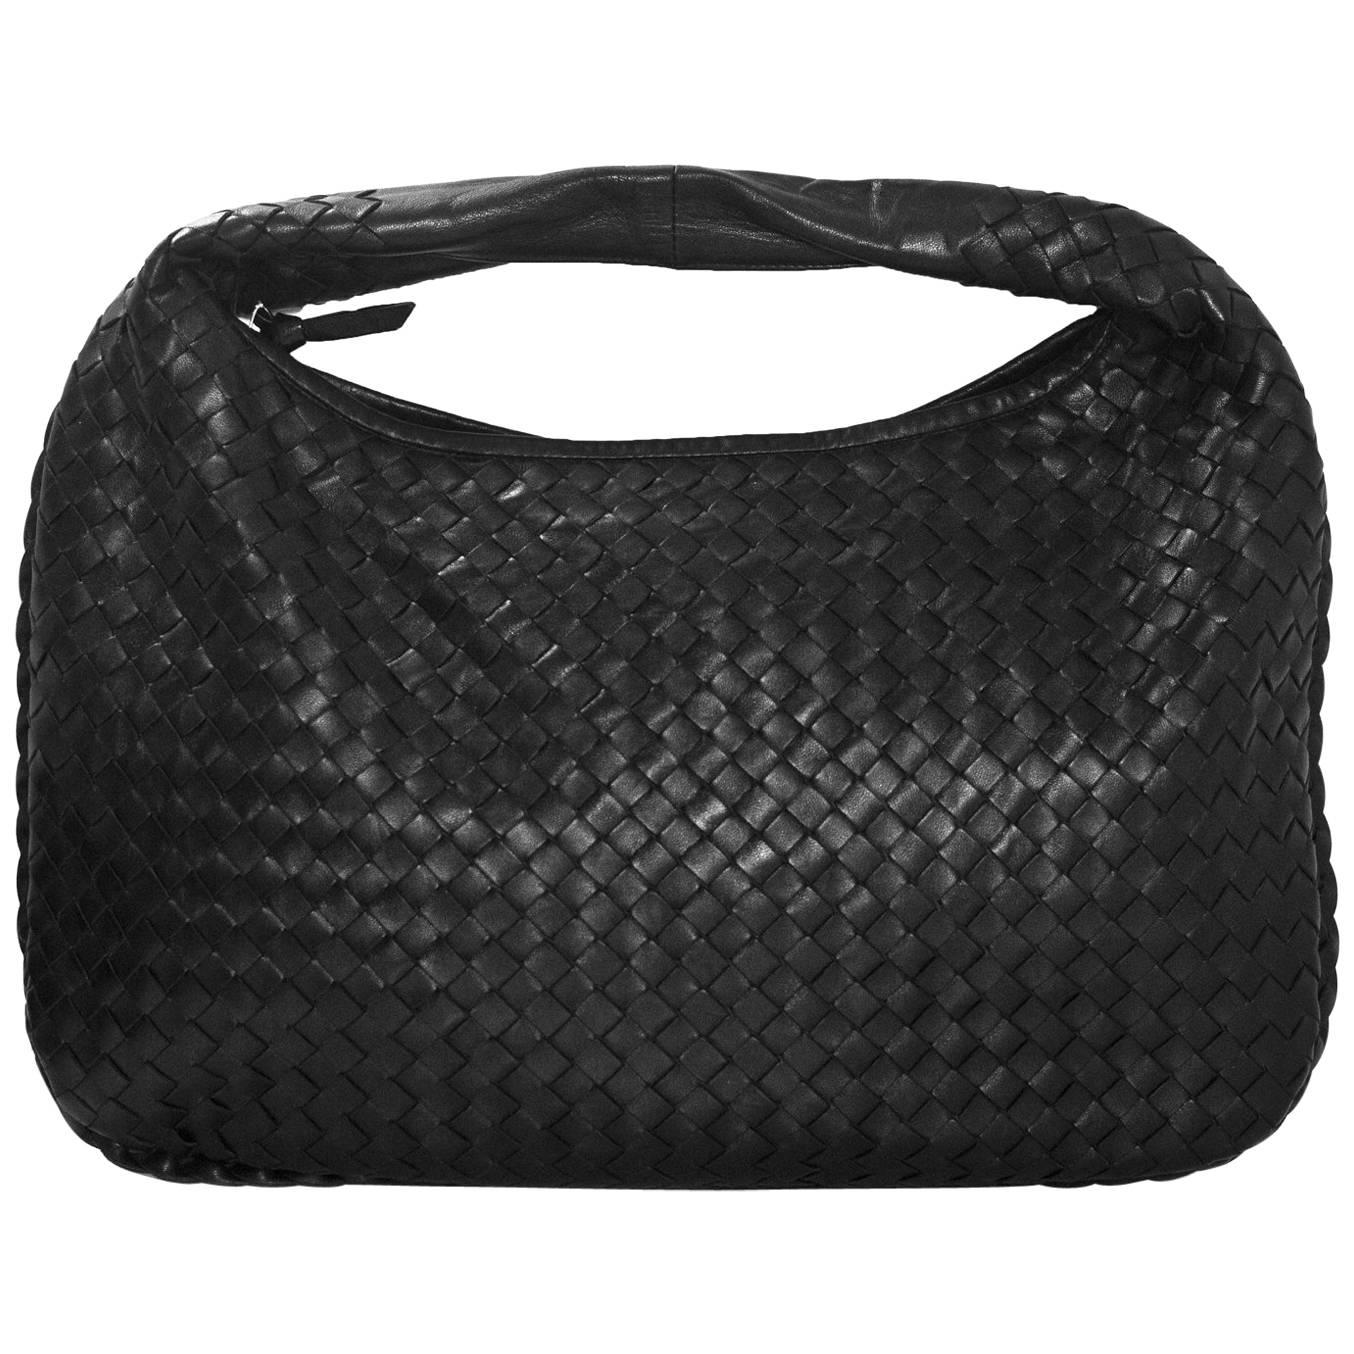 Bottega Veneta Black Leather Intrecciato Medium Hobo Bag